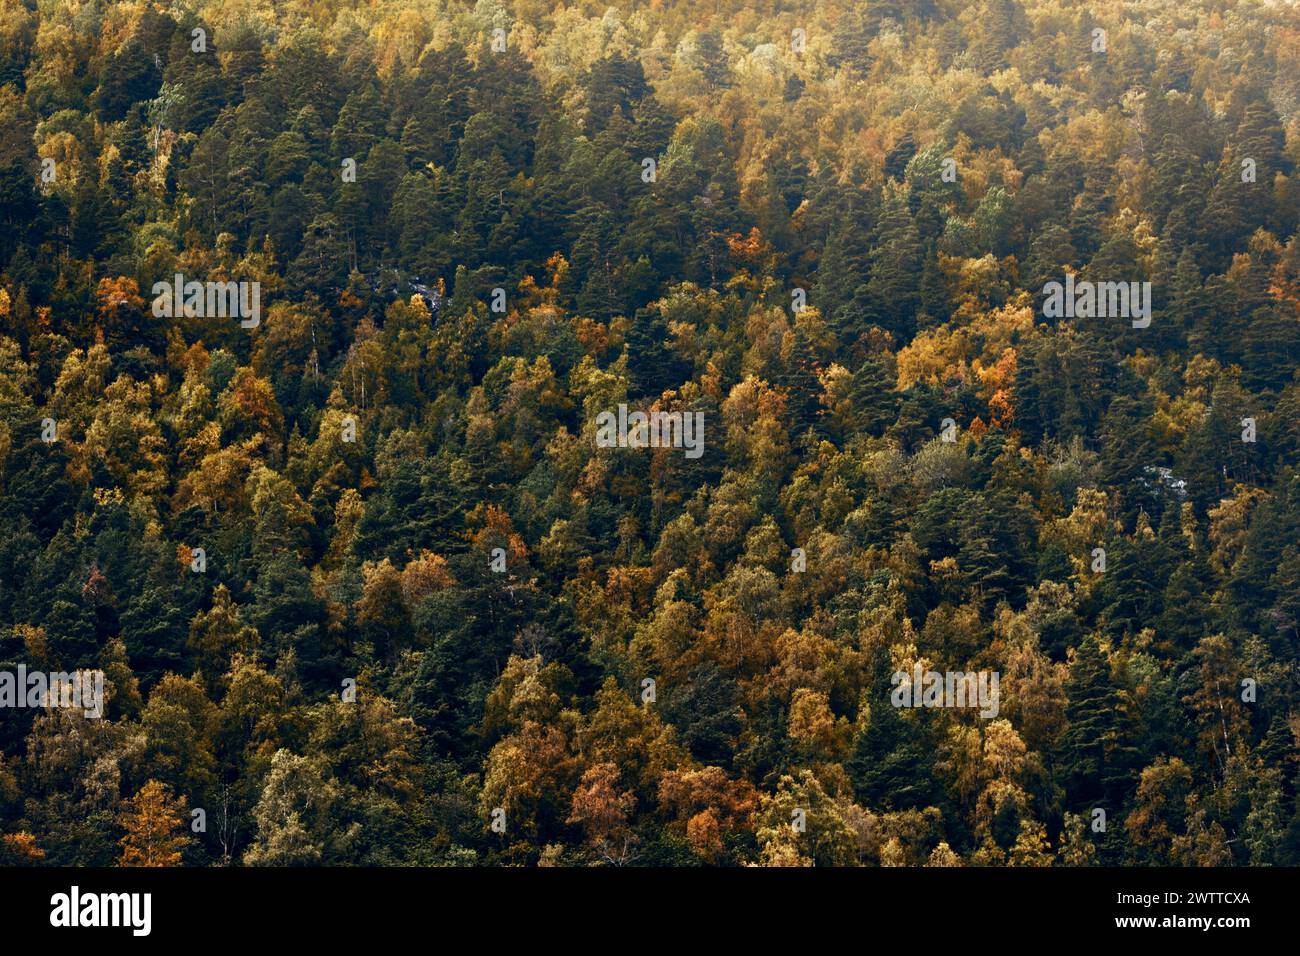 Un couvert forestier dense d'automne avec un spectre de couleurs d'automne Banque D'Images